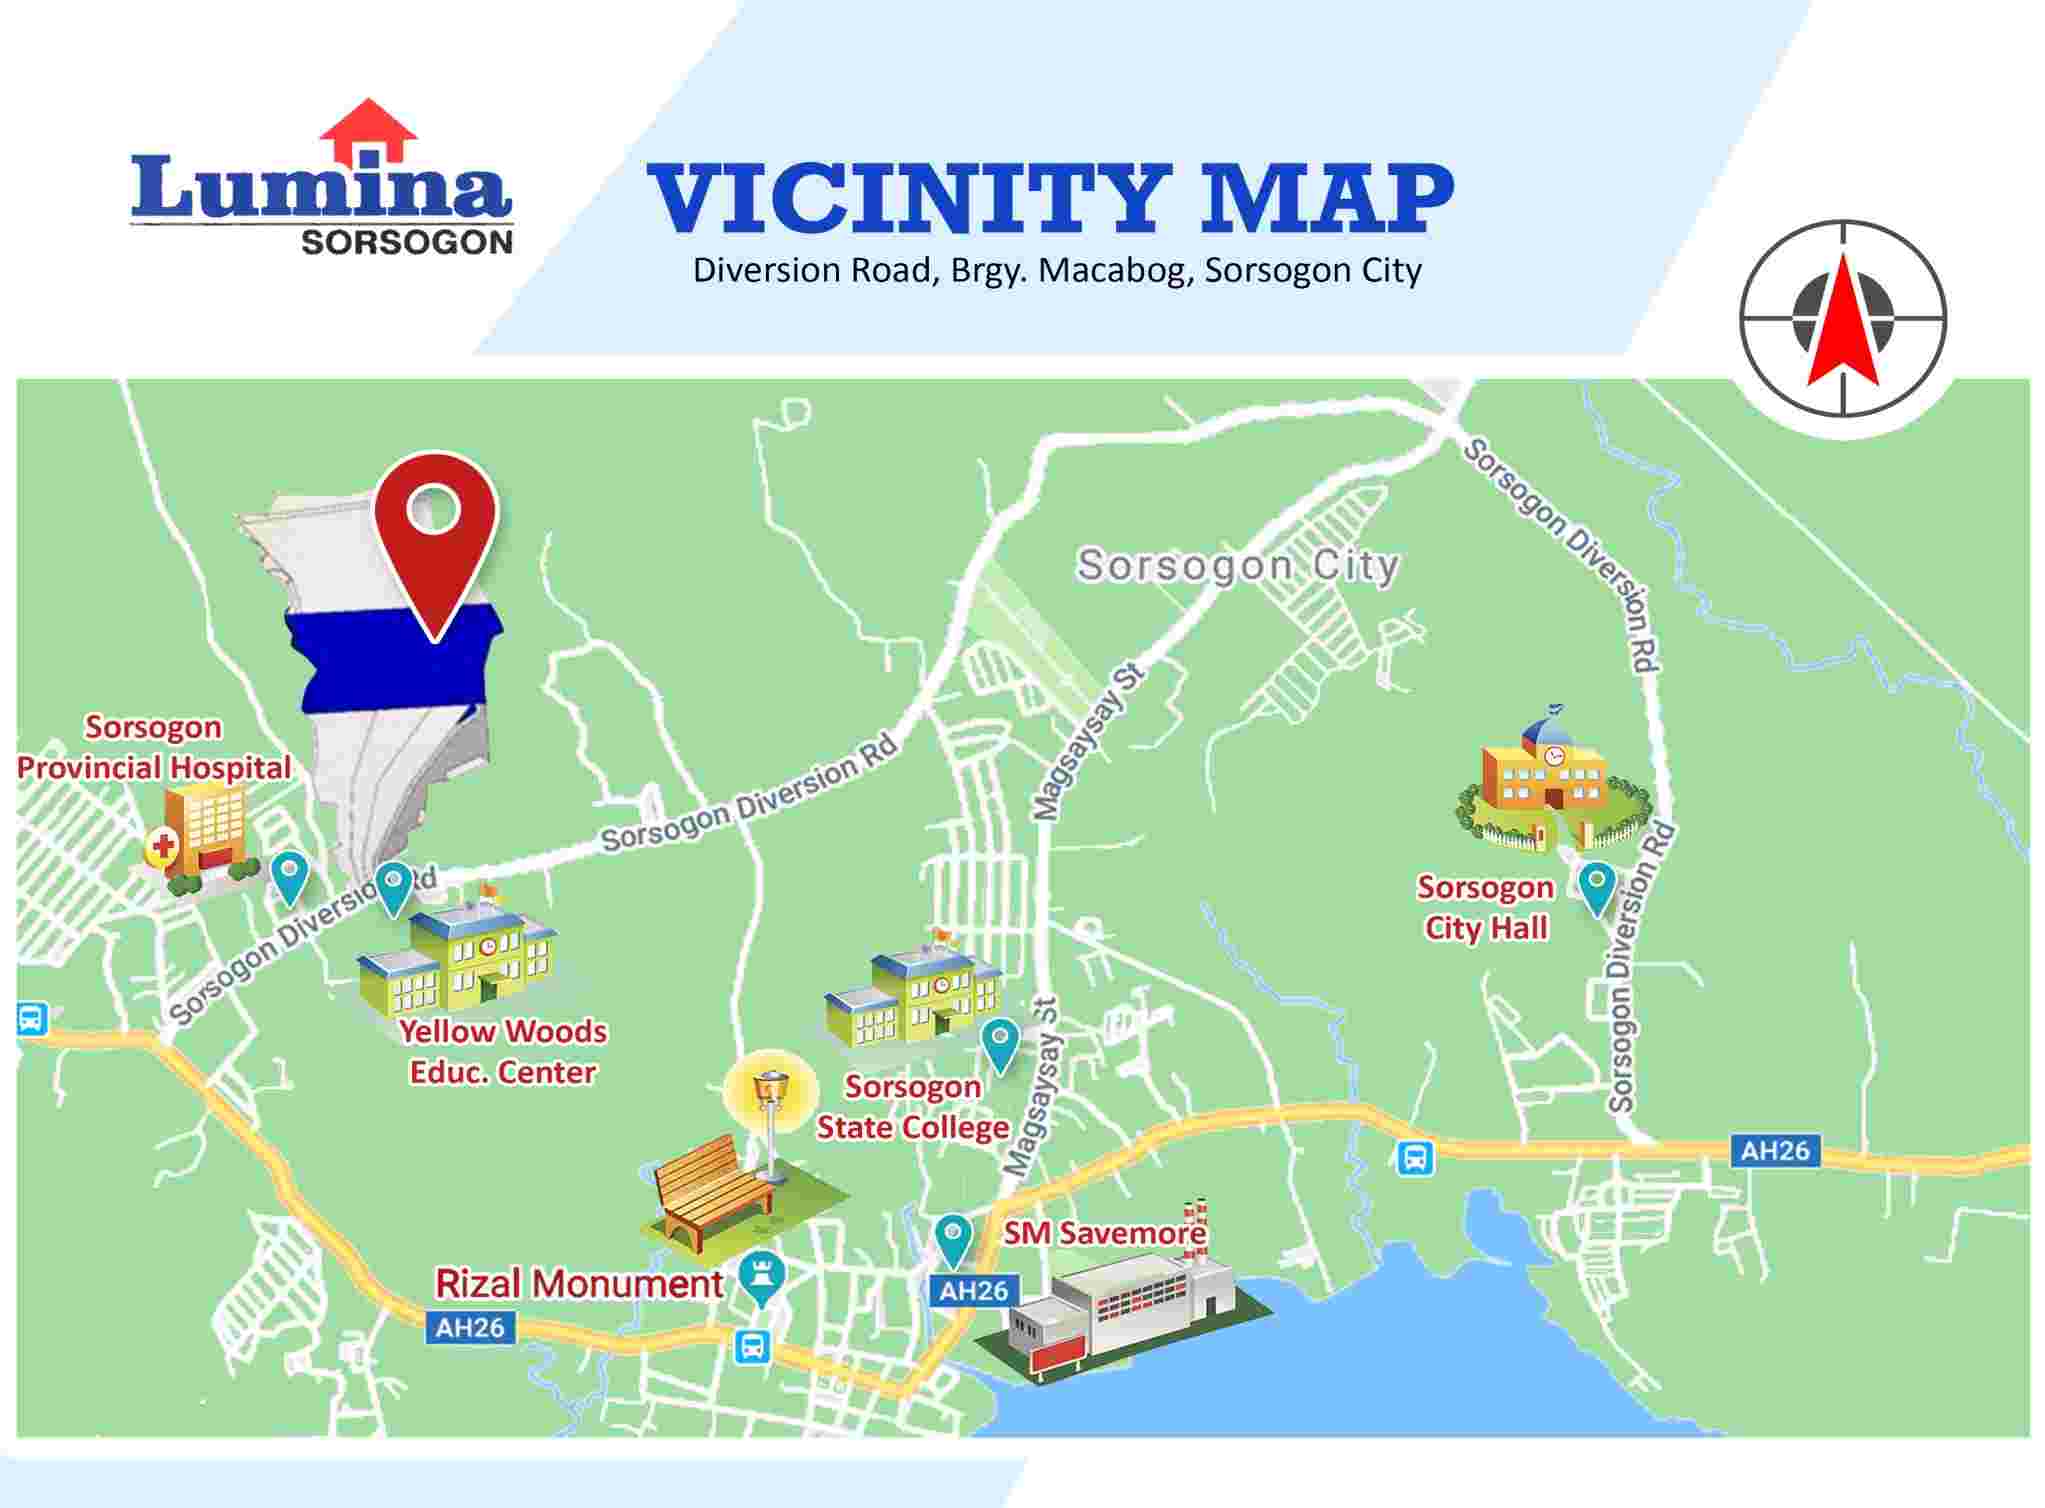 Vicinity-Map-1640660199.jpeg